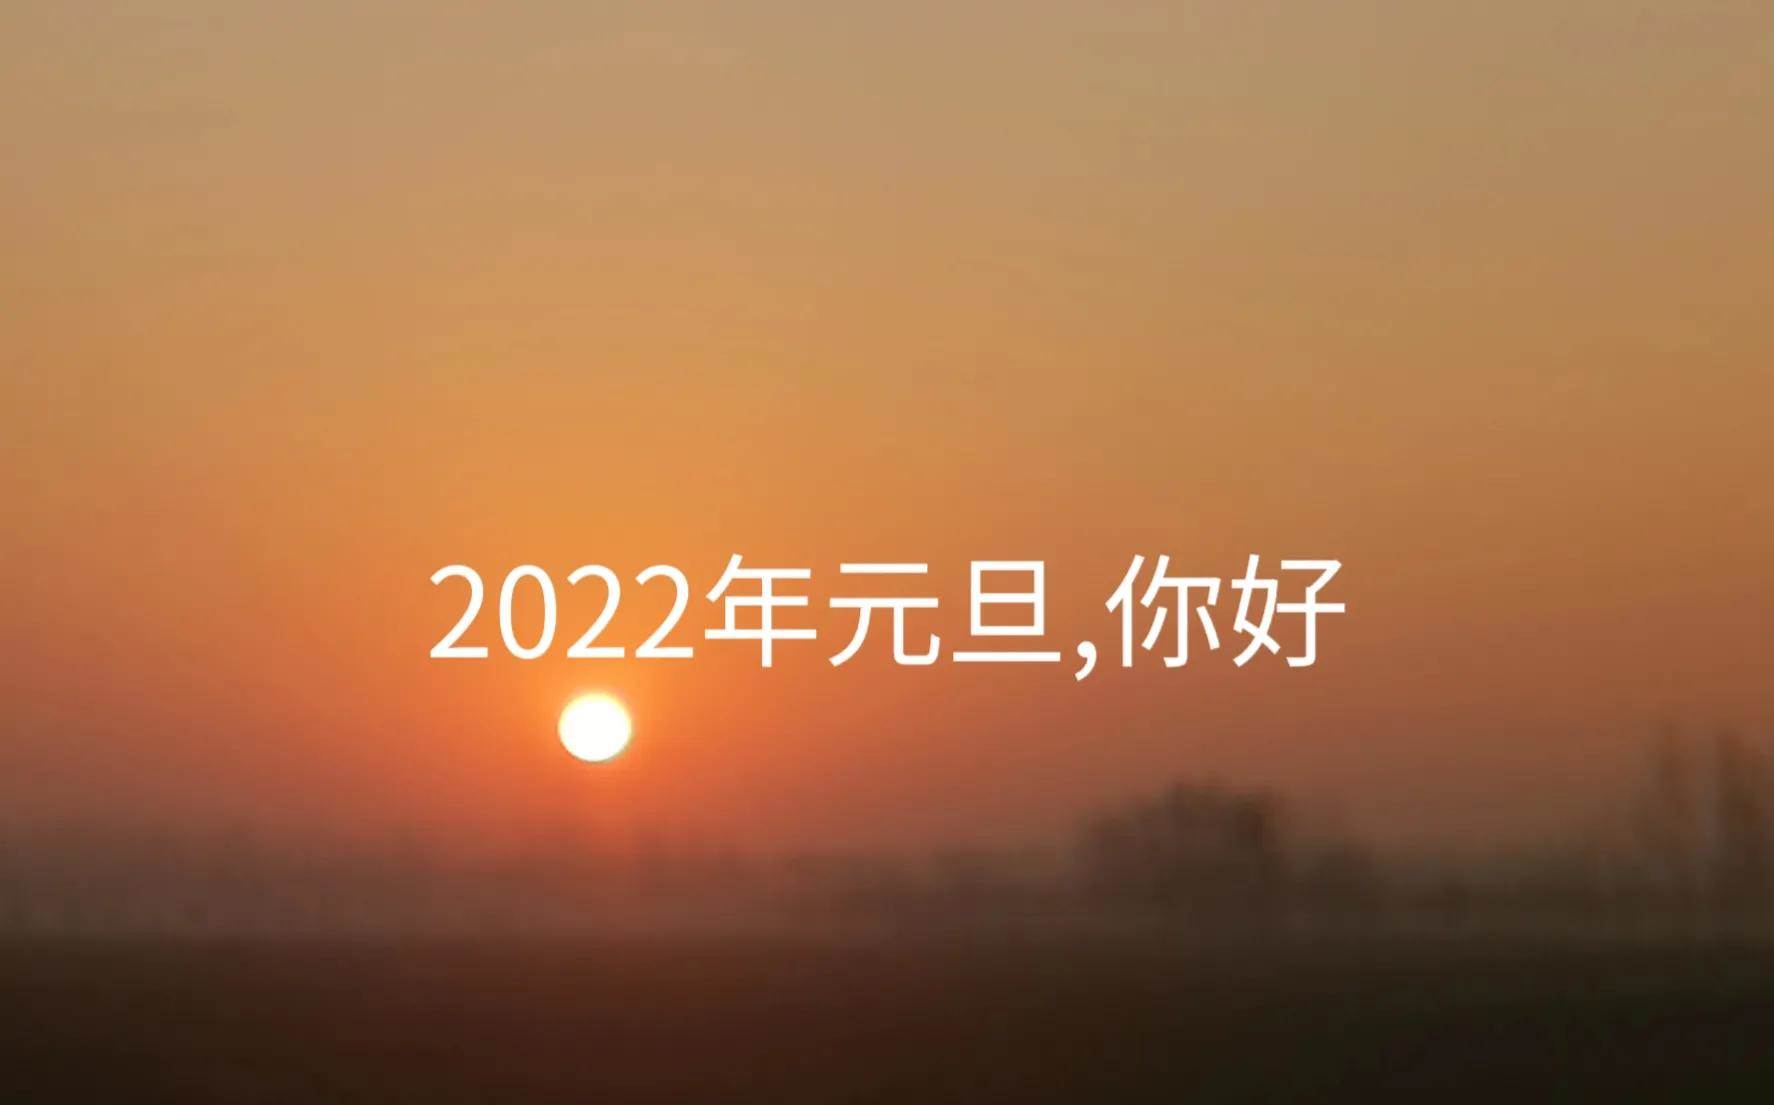 2022年1月1日元旦祝福语_2022祝元旦新春快乐